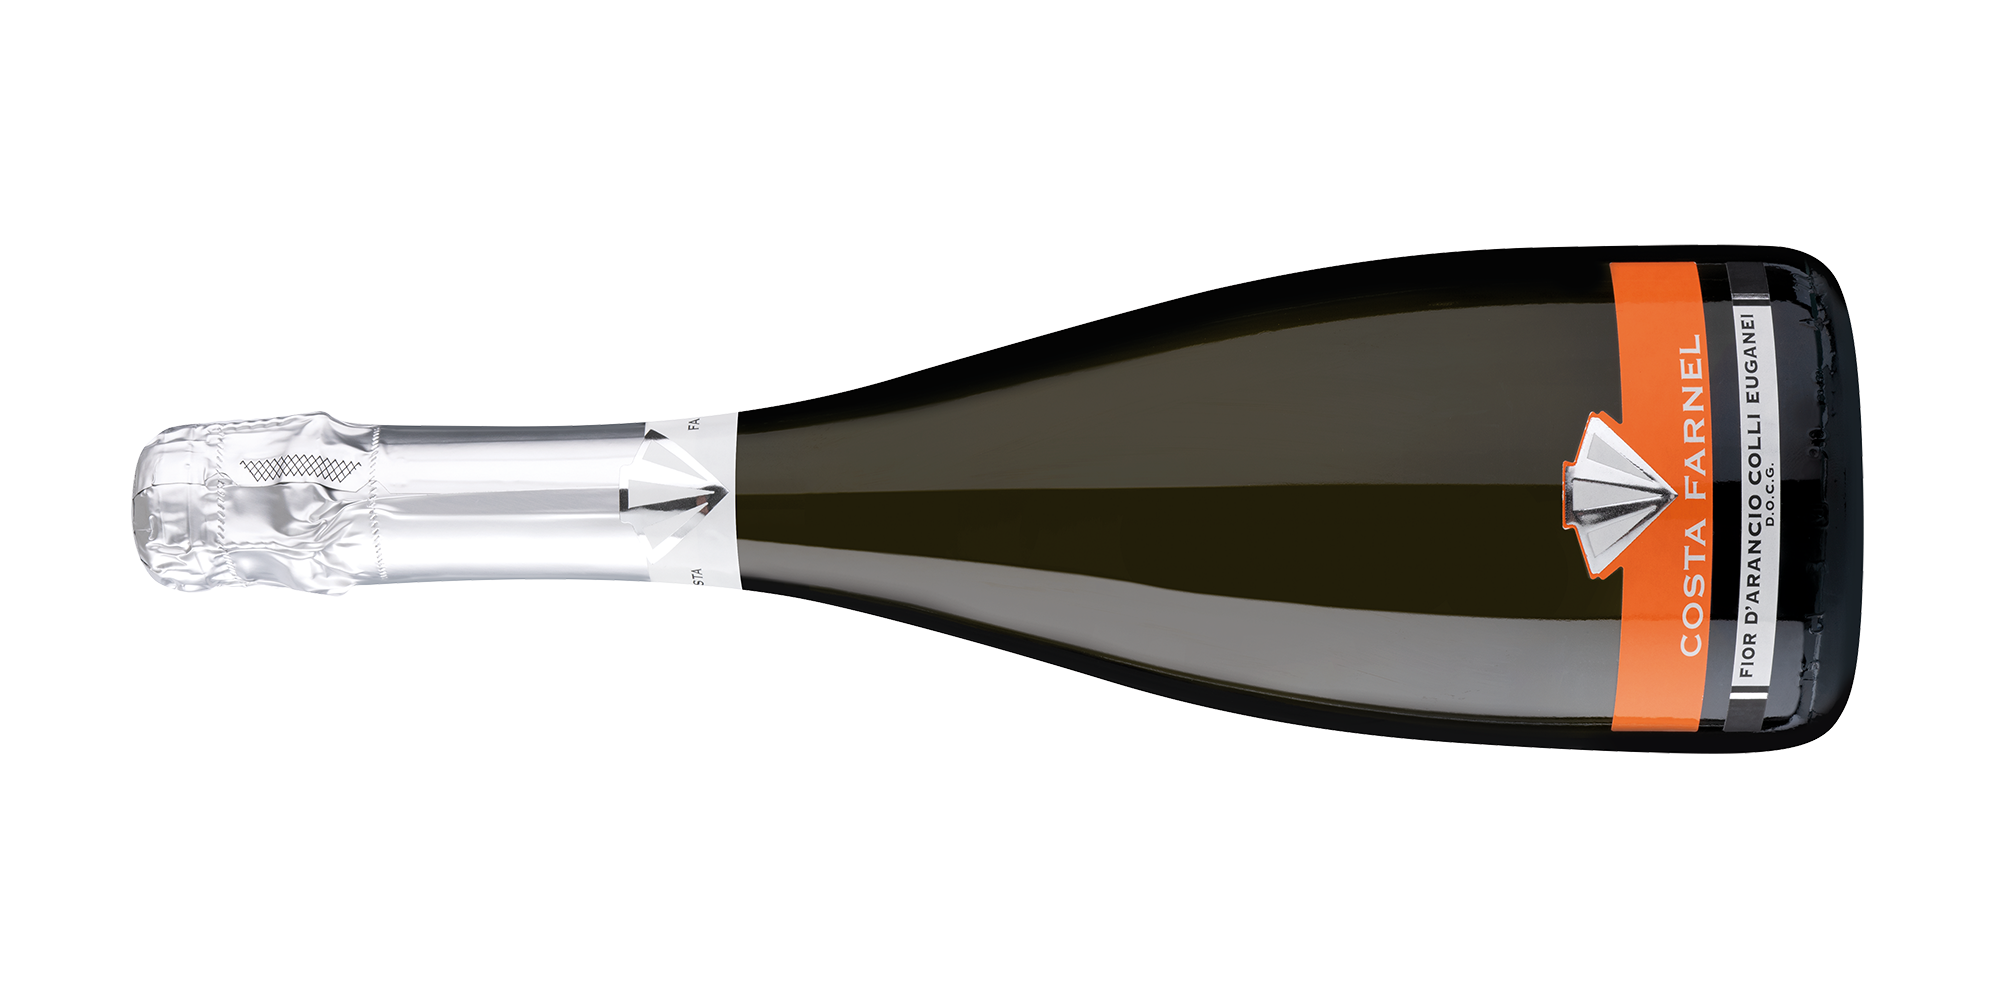 Costa Farnel Wines - High quality sparkling wine - Fior D'Arancio - Vino Spumante Dolce Colli Euganei DOC